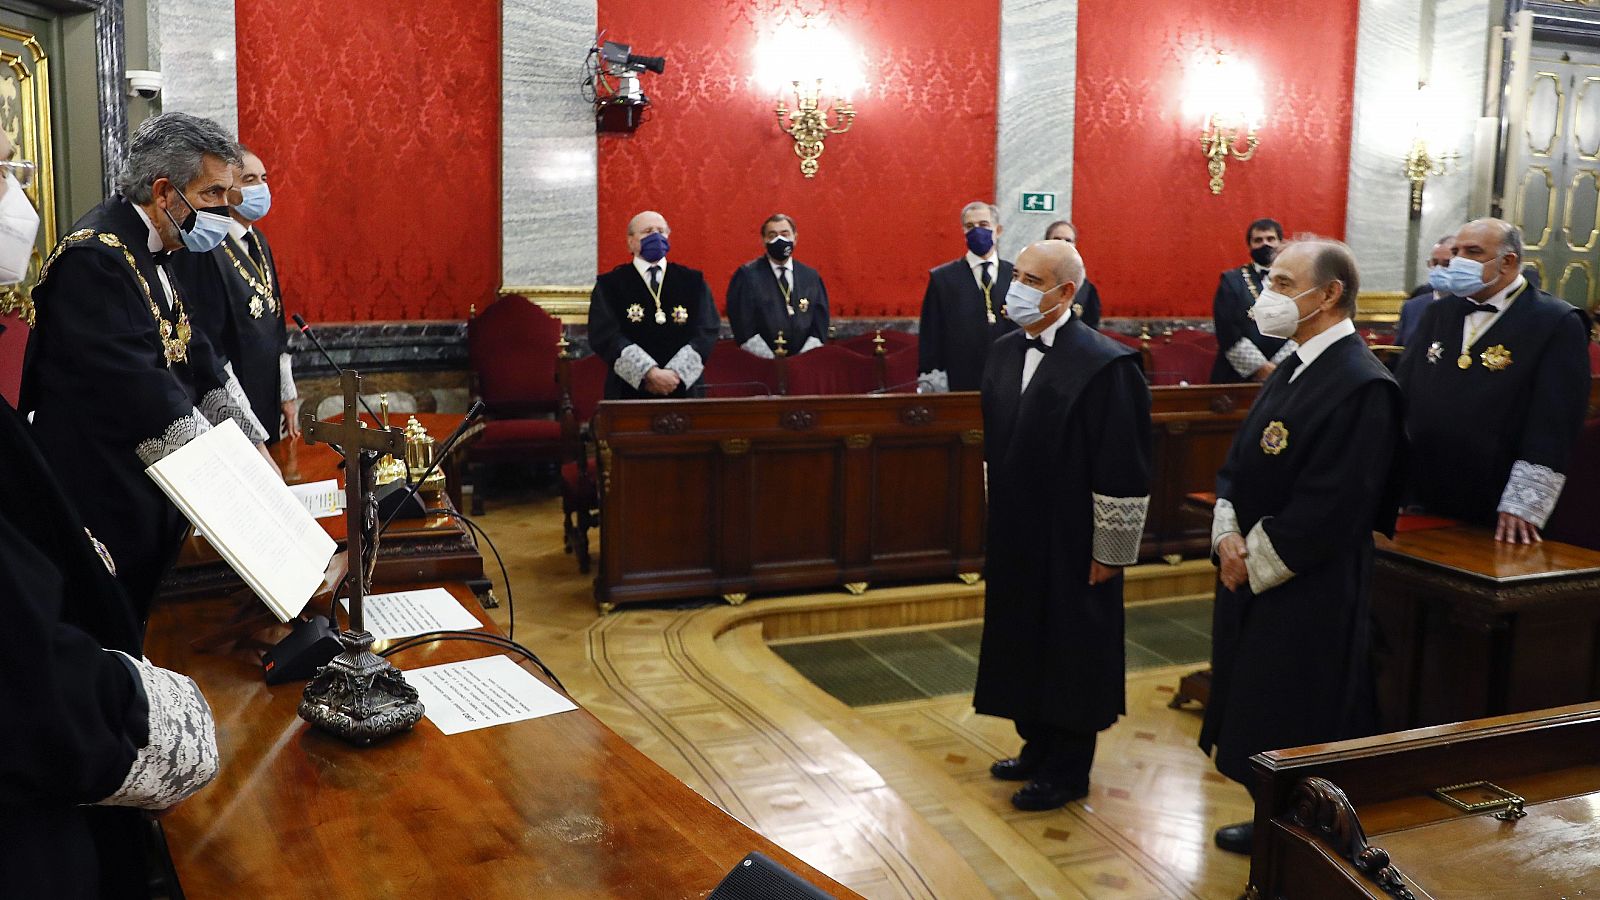 El presidente del Tribunal Supremo y del CGPJ, Carlos Lesmes, preside el acto de toma de posesión de varios magistrados de la Sala Segunda del Supremo.